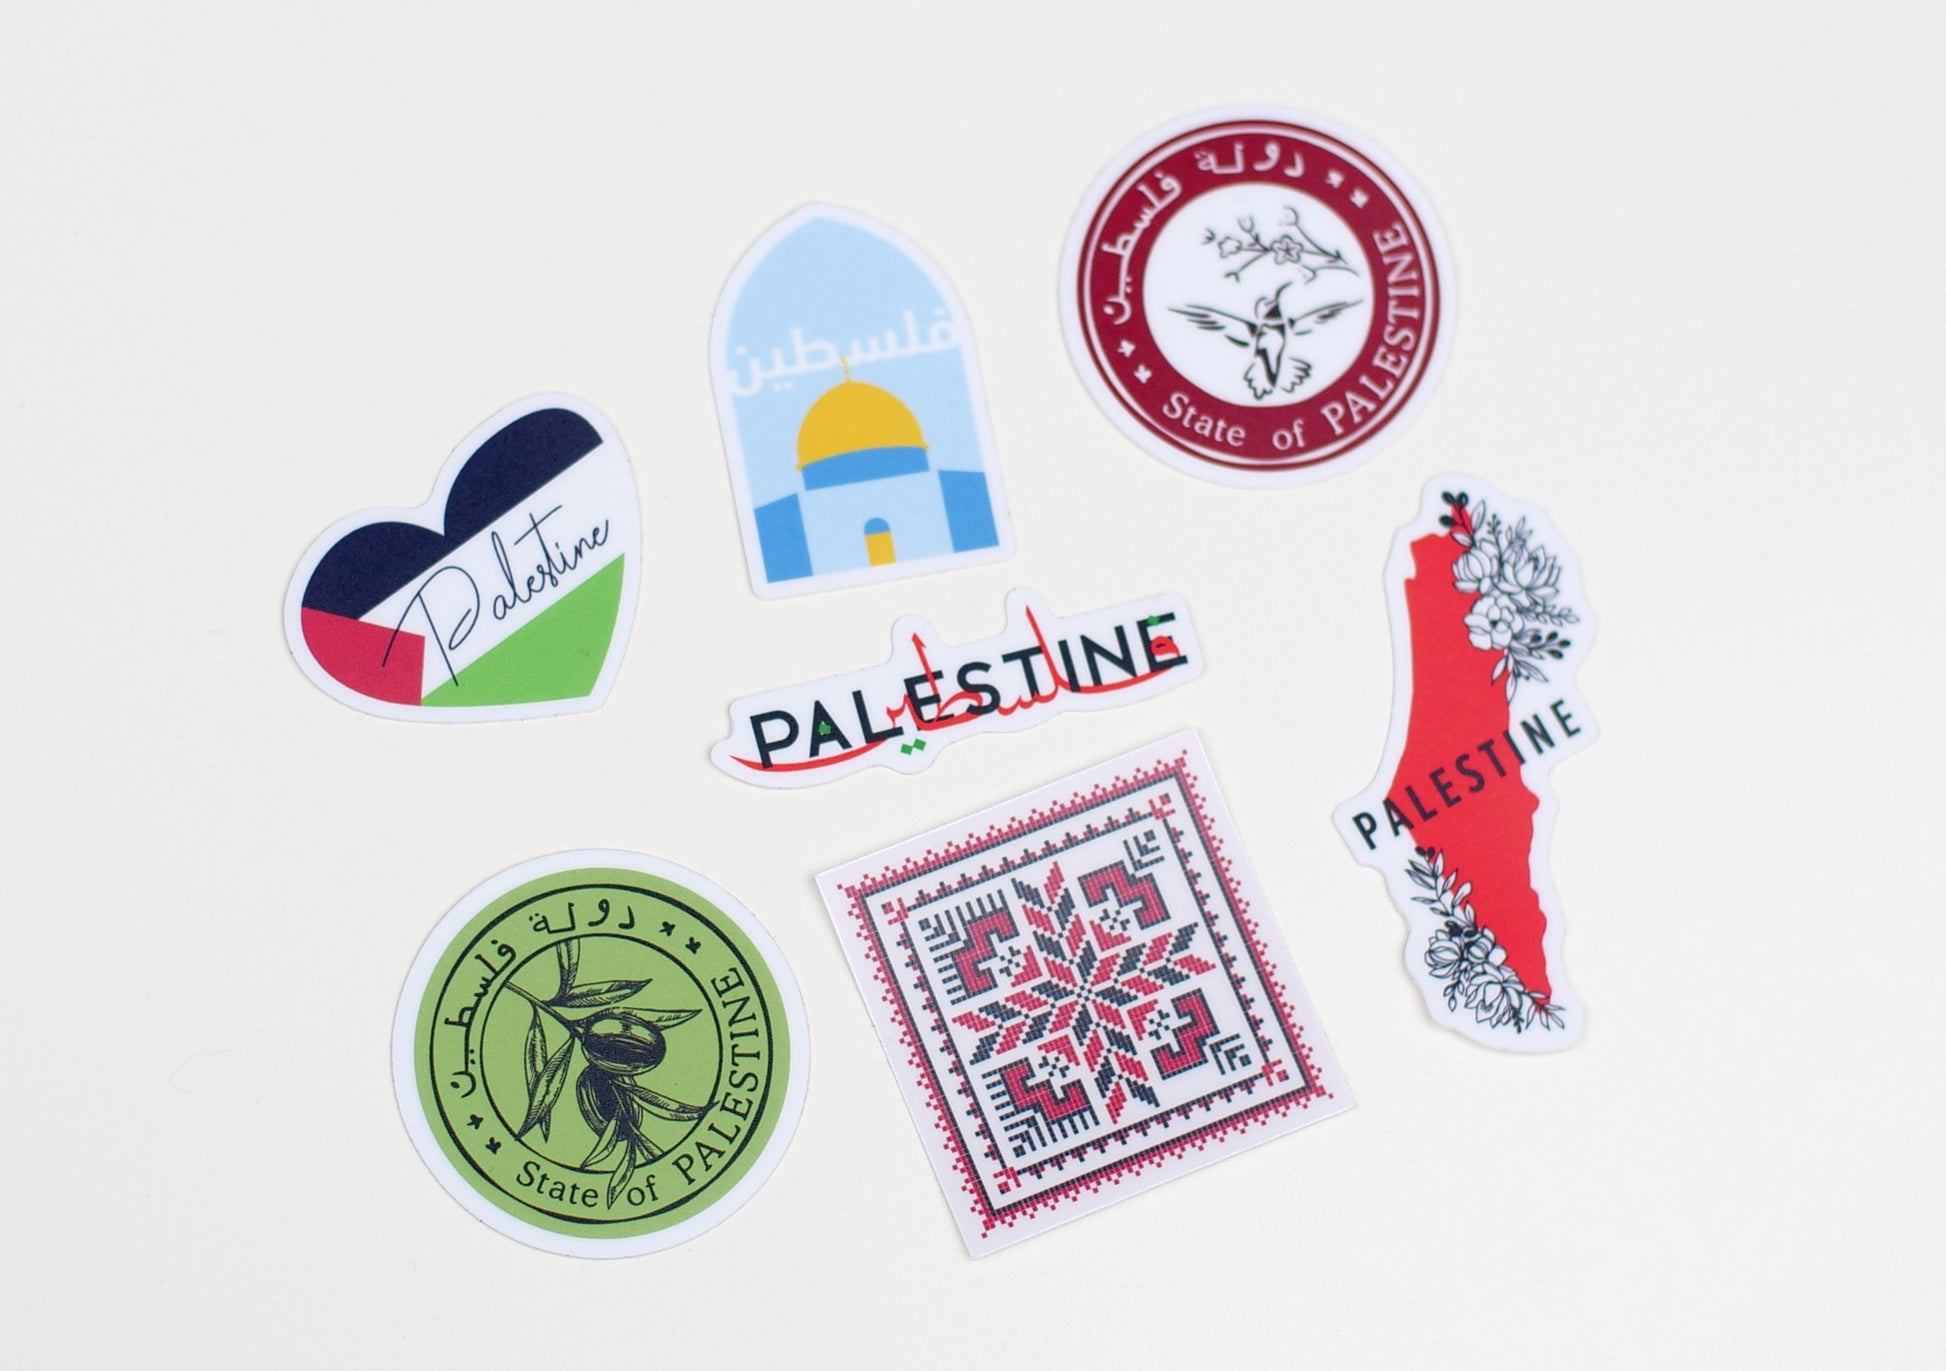 Autocollant Palestine فلسطين sticker département plaque